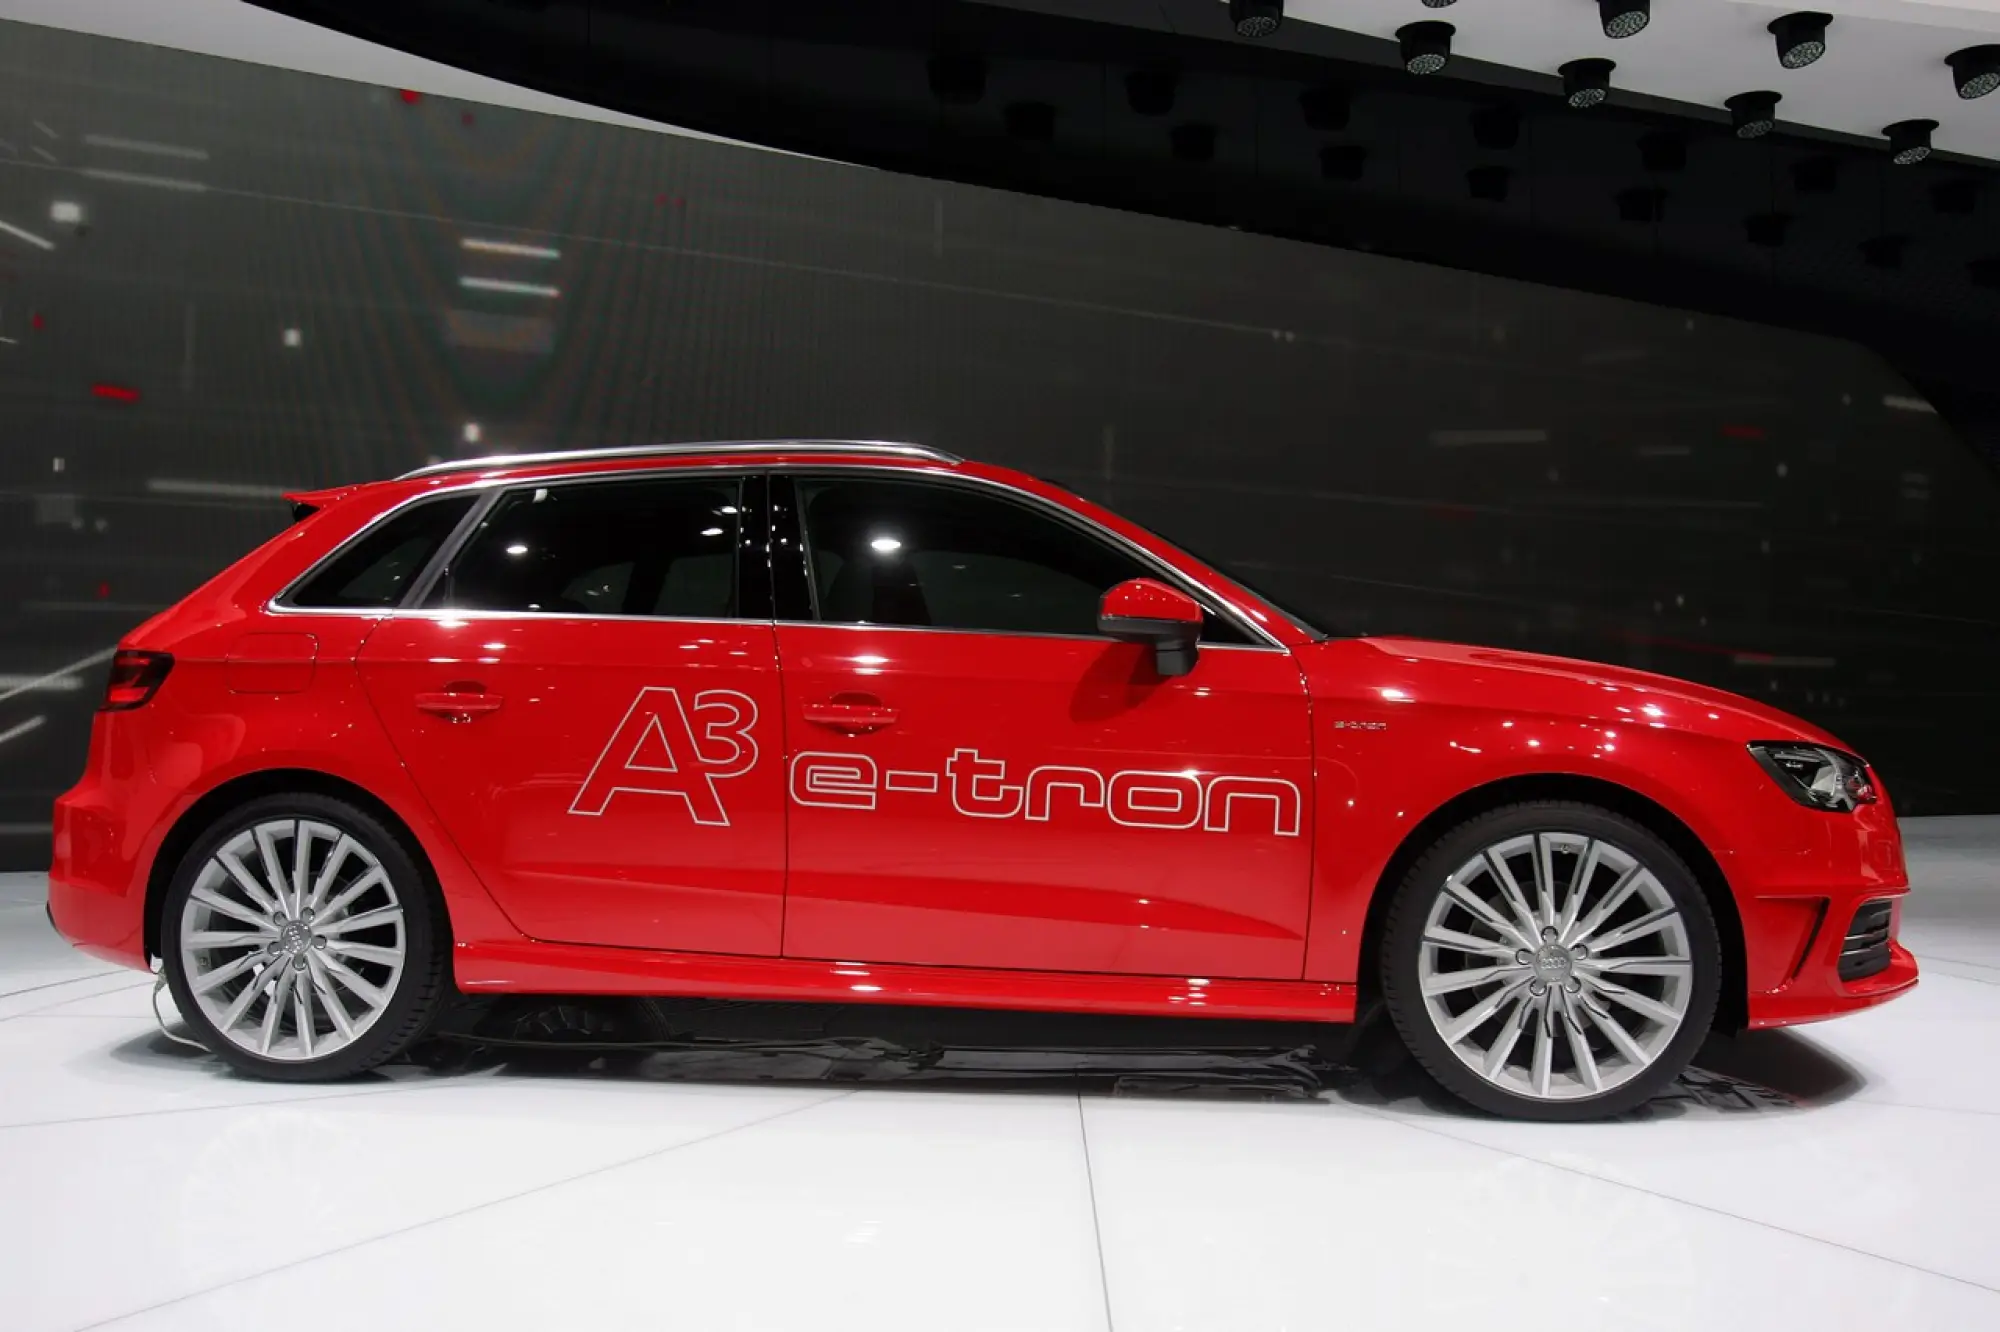 Audi A3 e-tron - Salone di Ginevra 2013 - 5